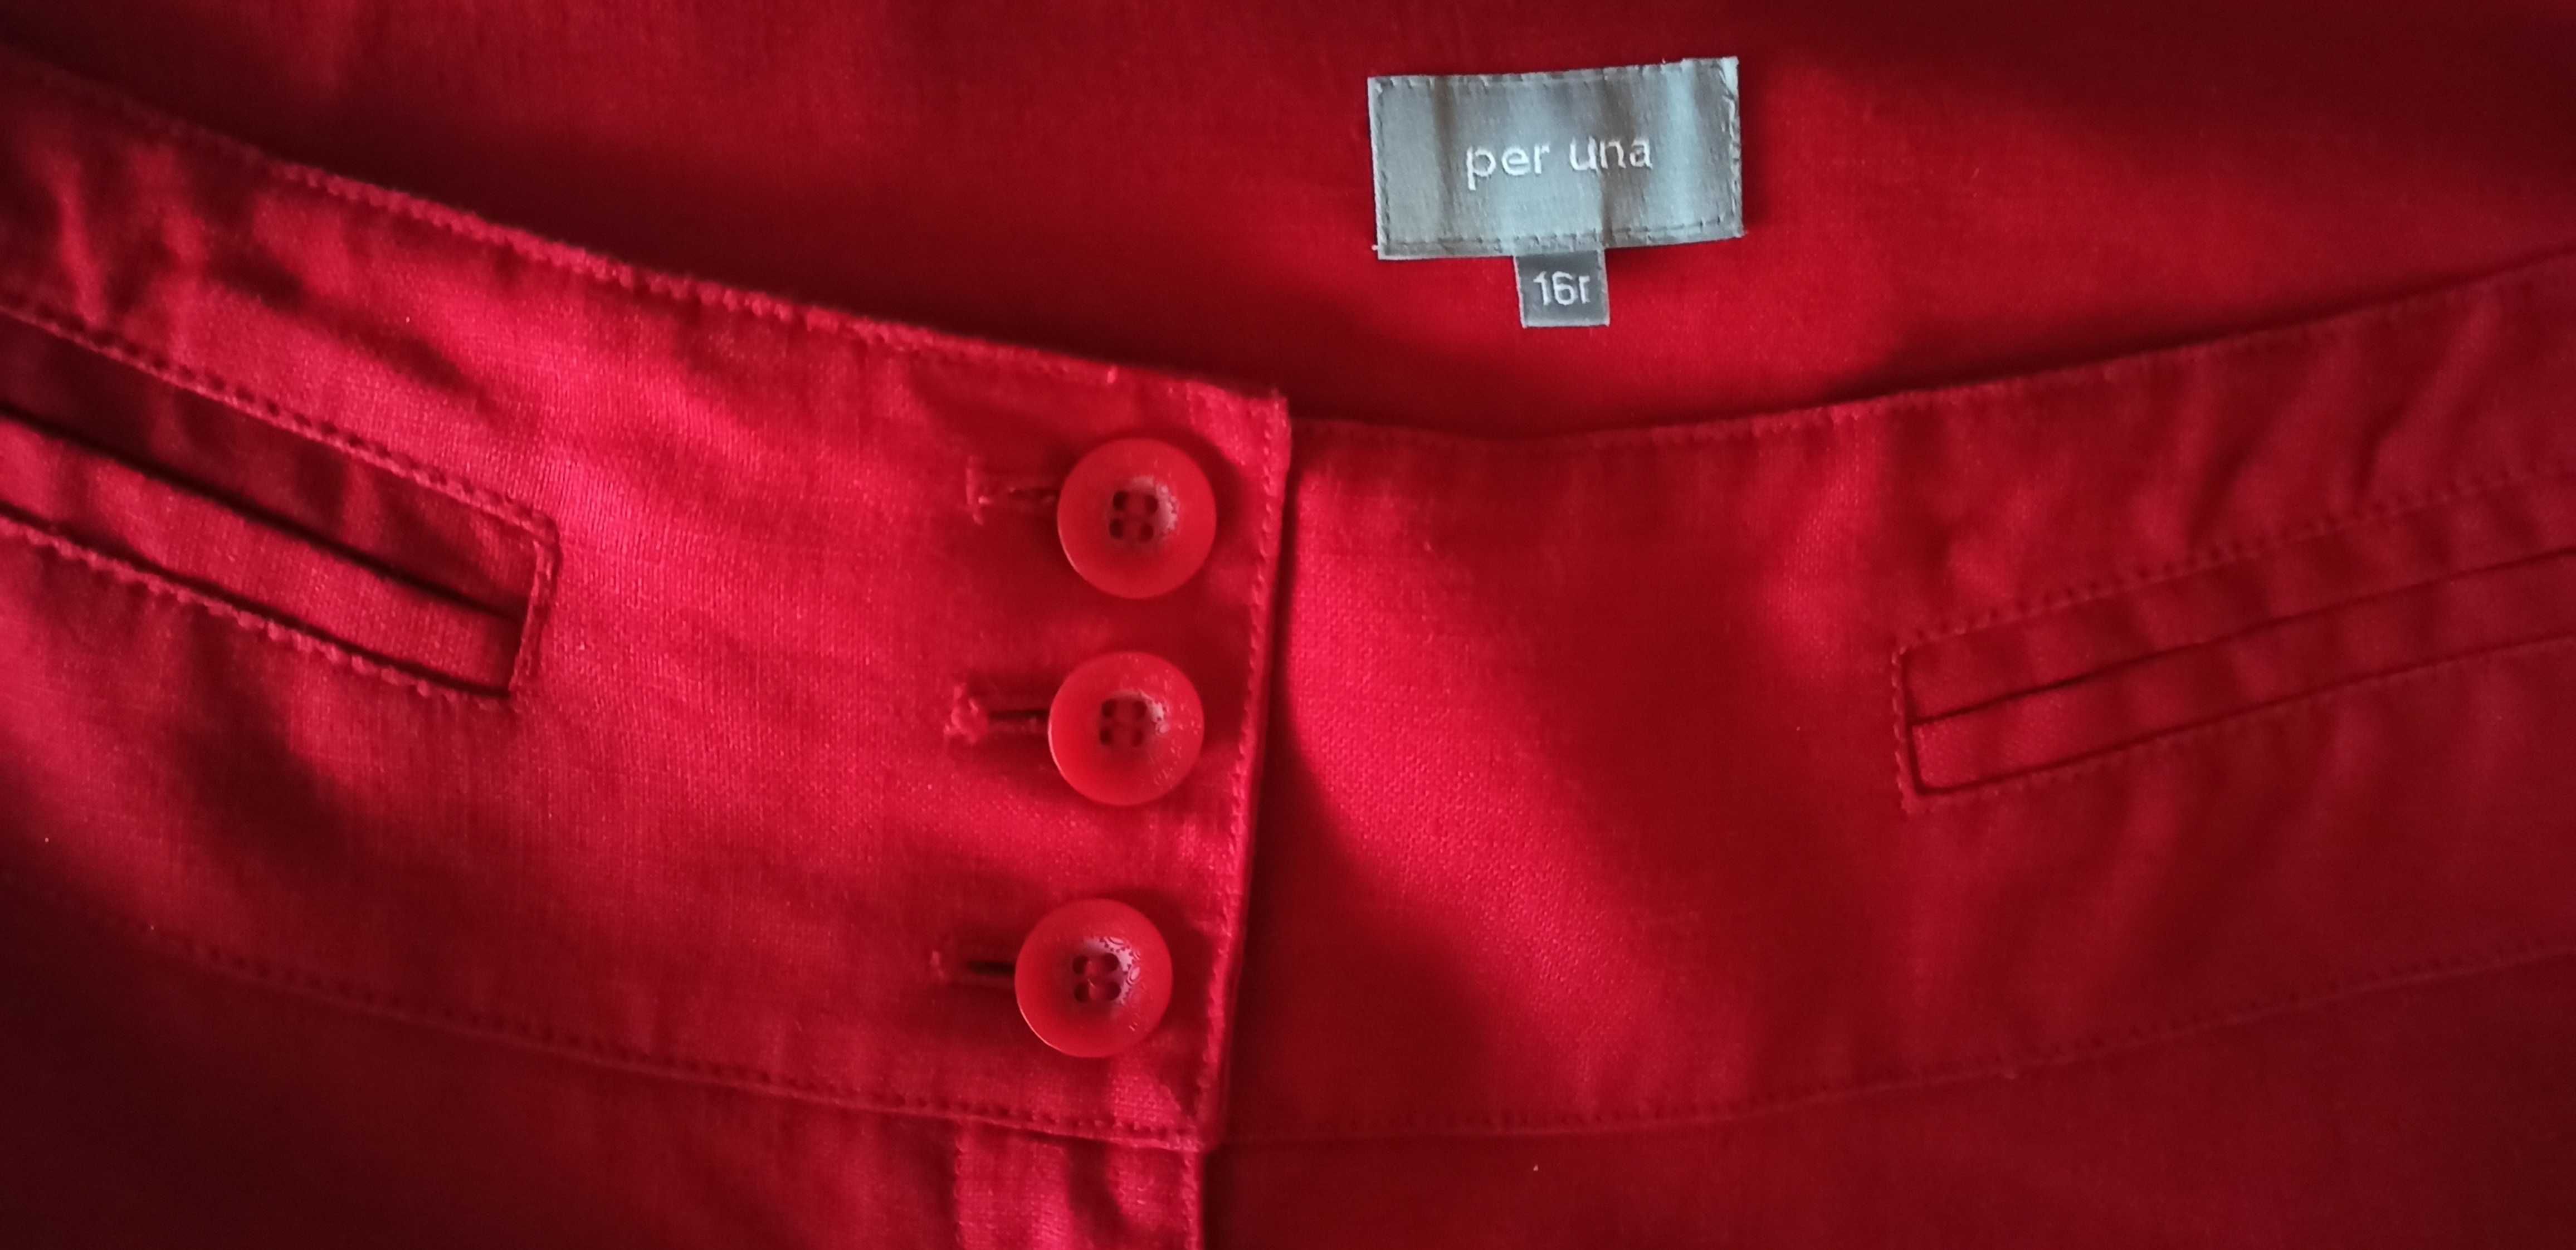 Lniane czerwone burgundowe spodnie Marks & Spencer